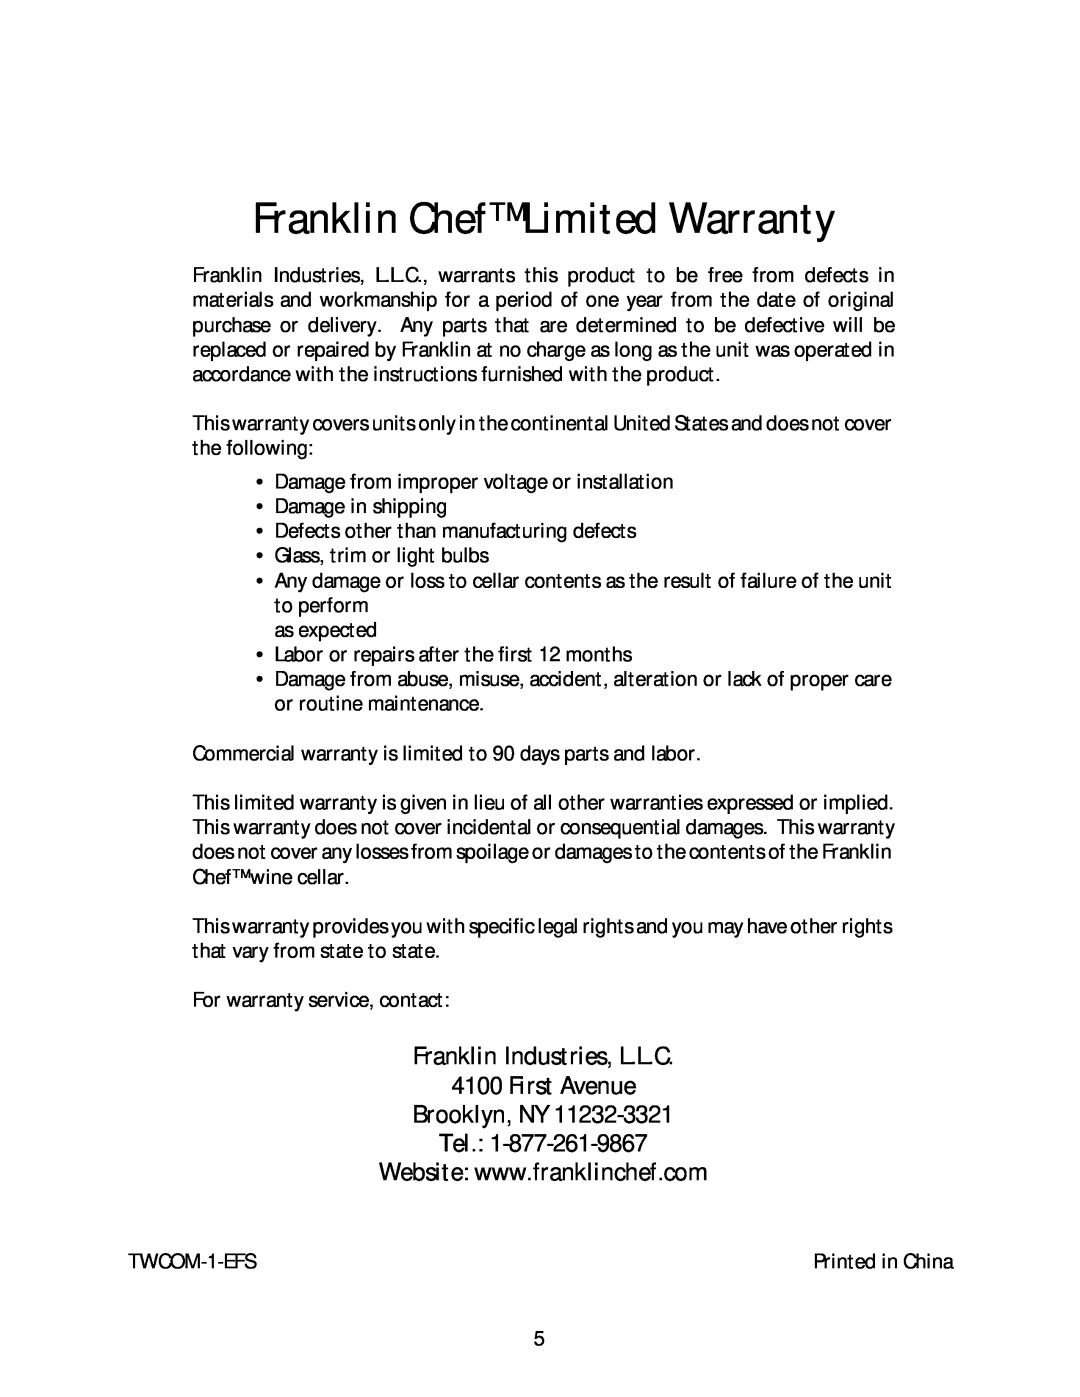 Franklin Industries, L.L.C FCW16T, FCW20TC Franklin ChefLimited Warranty, Franklin Industries, L.L.C 4100 First Avenue 